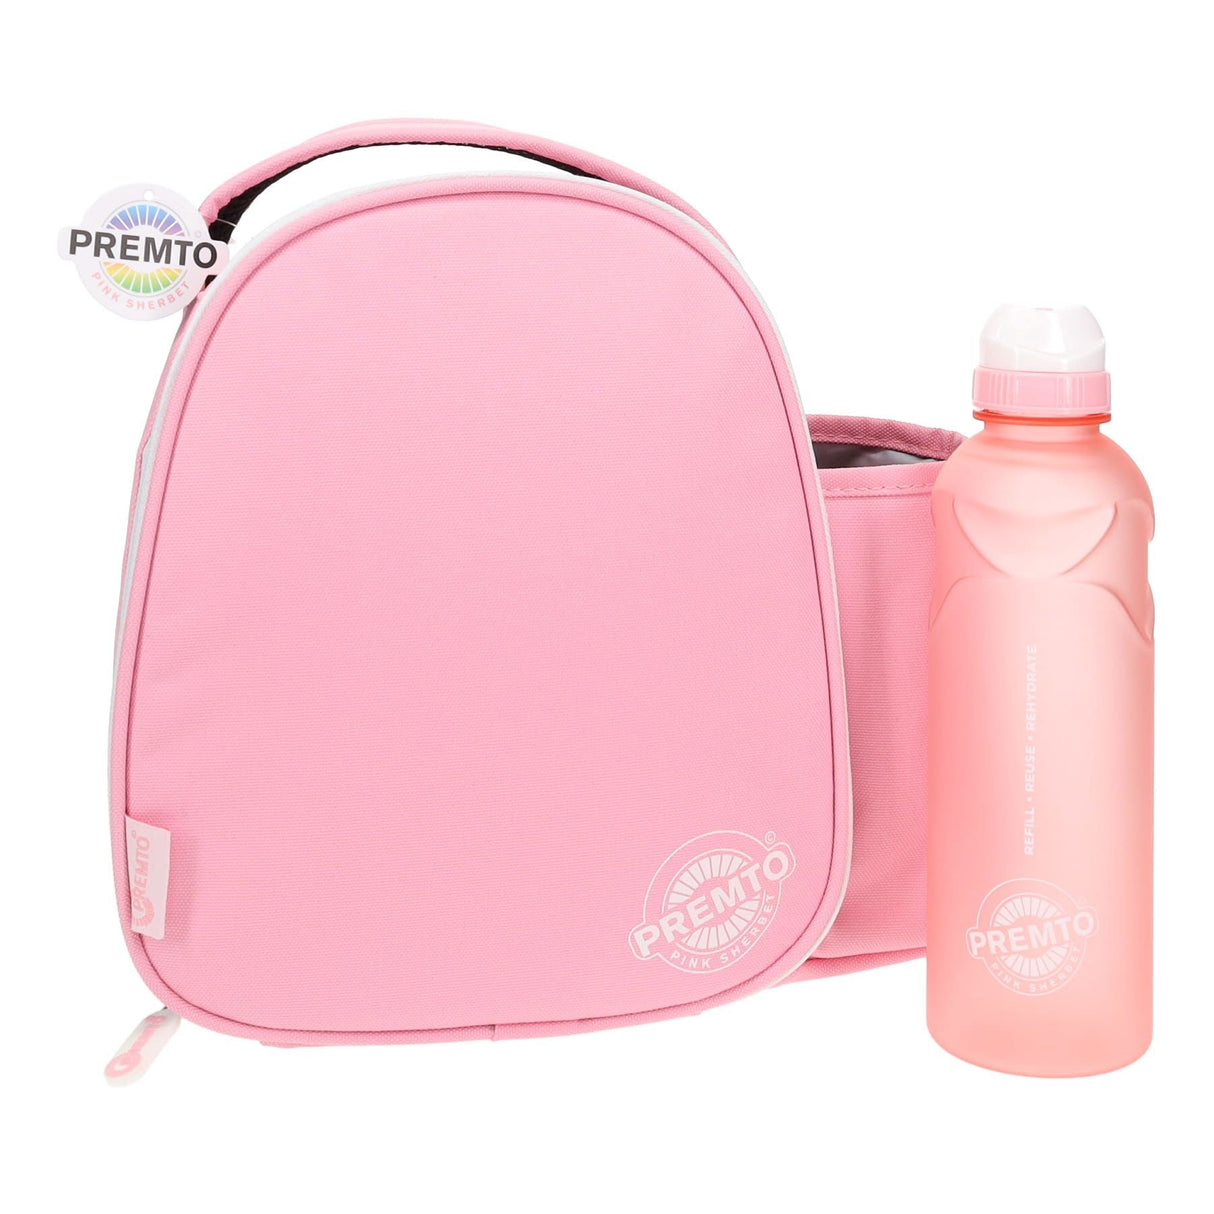 Premto Lunch Bag - Pink Sherbet | Stationery Shop UK